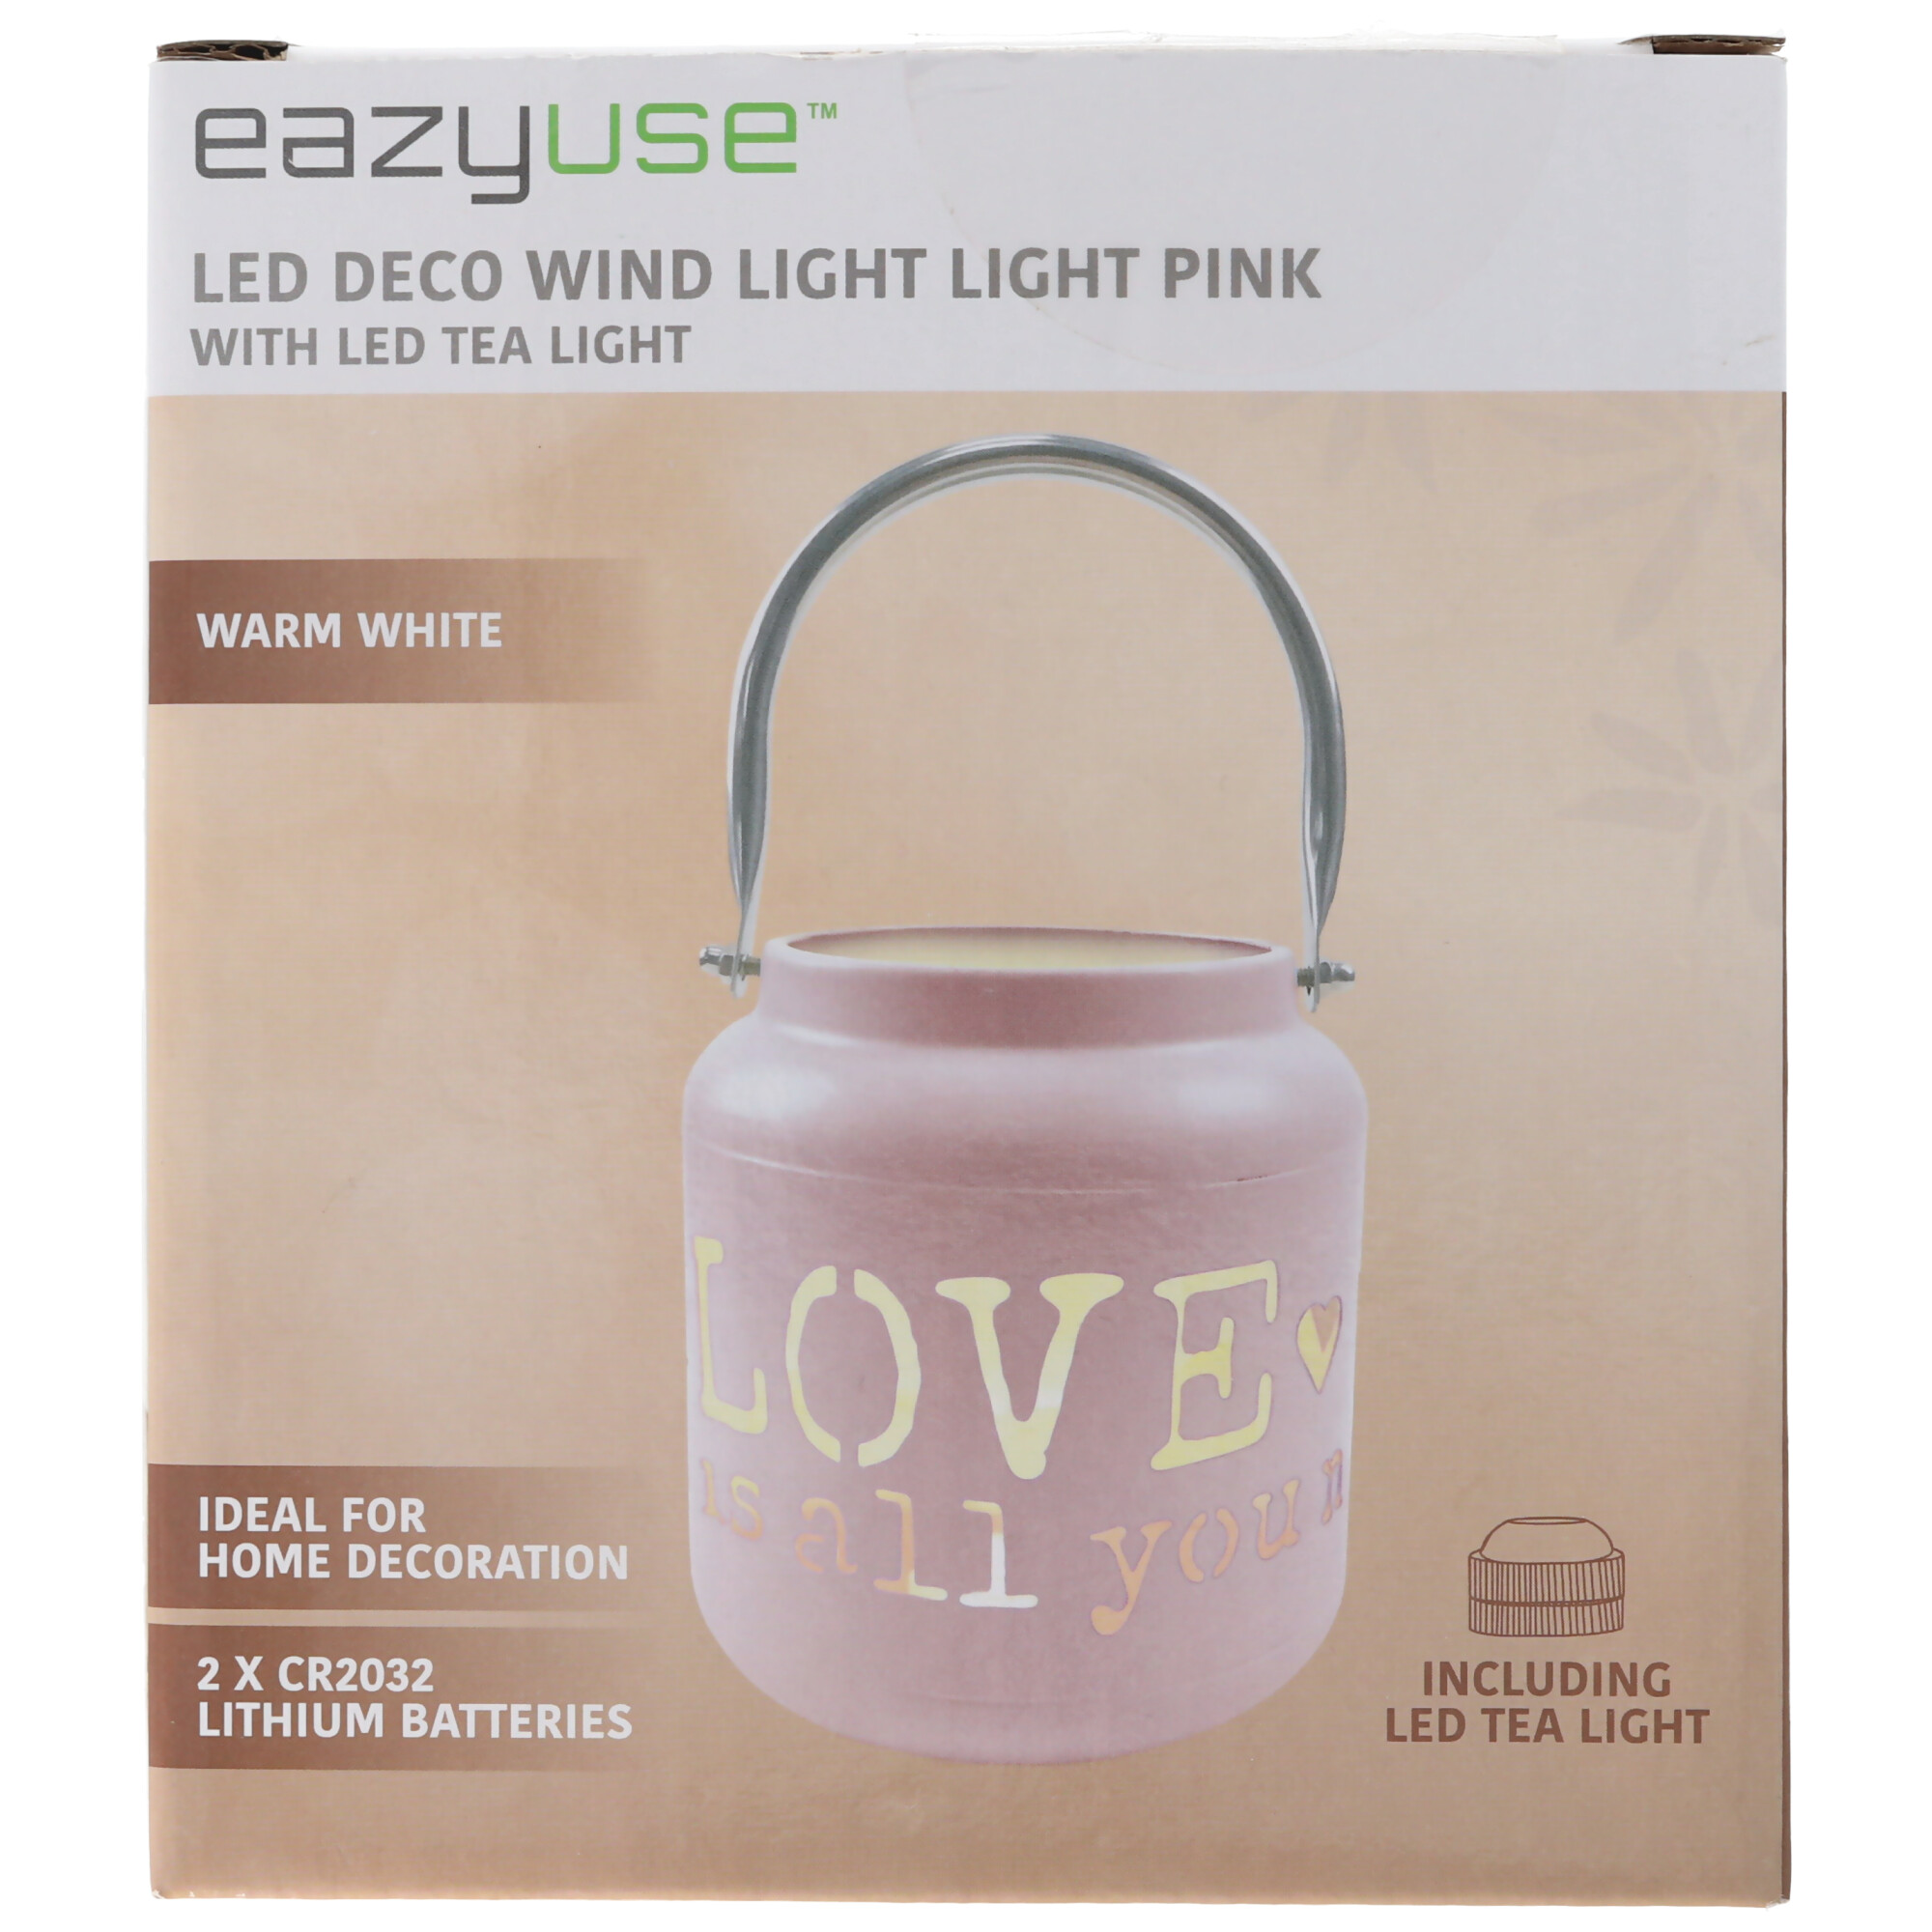 LED Windlicht mit dem Schriftzug Love is all you need hellrosa, die LED-Laterne, der runde Kerzenhalter, mit 2 Batterien